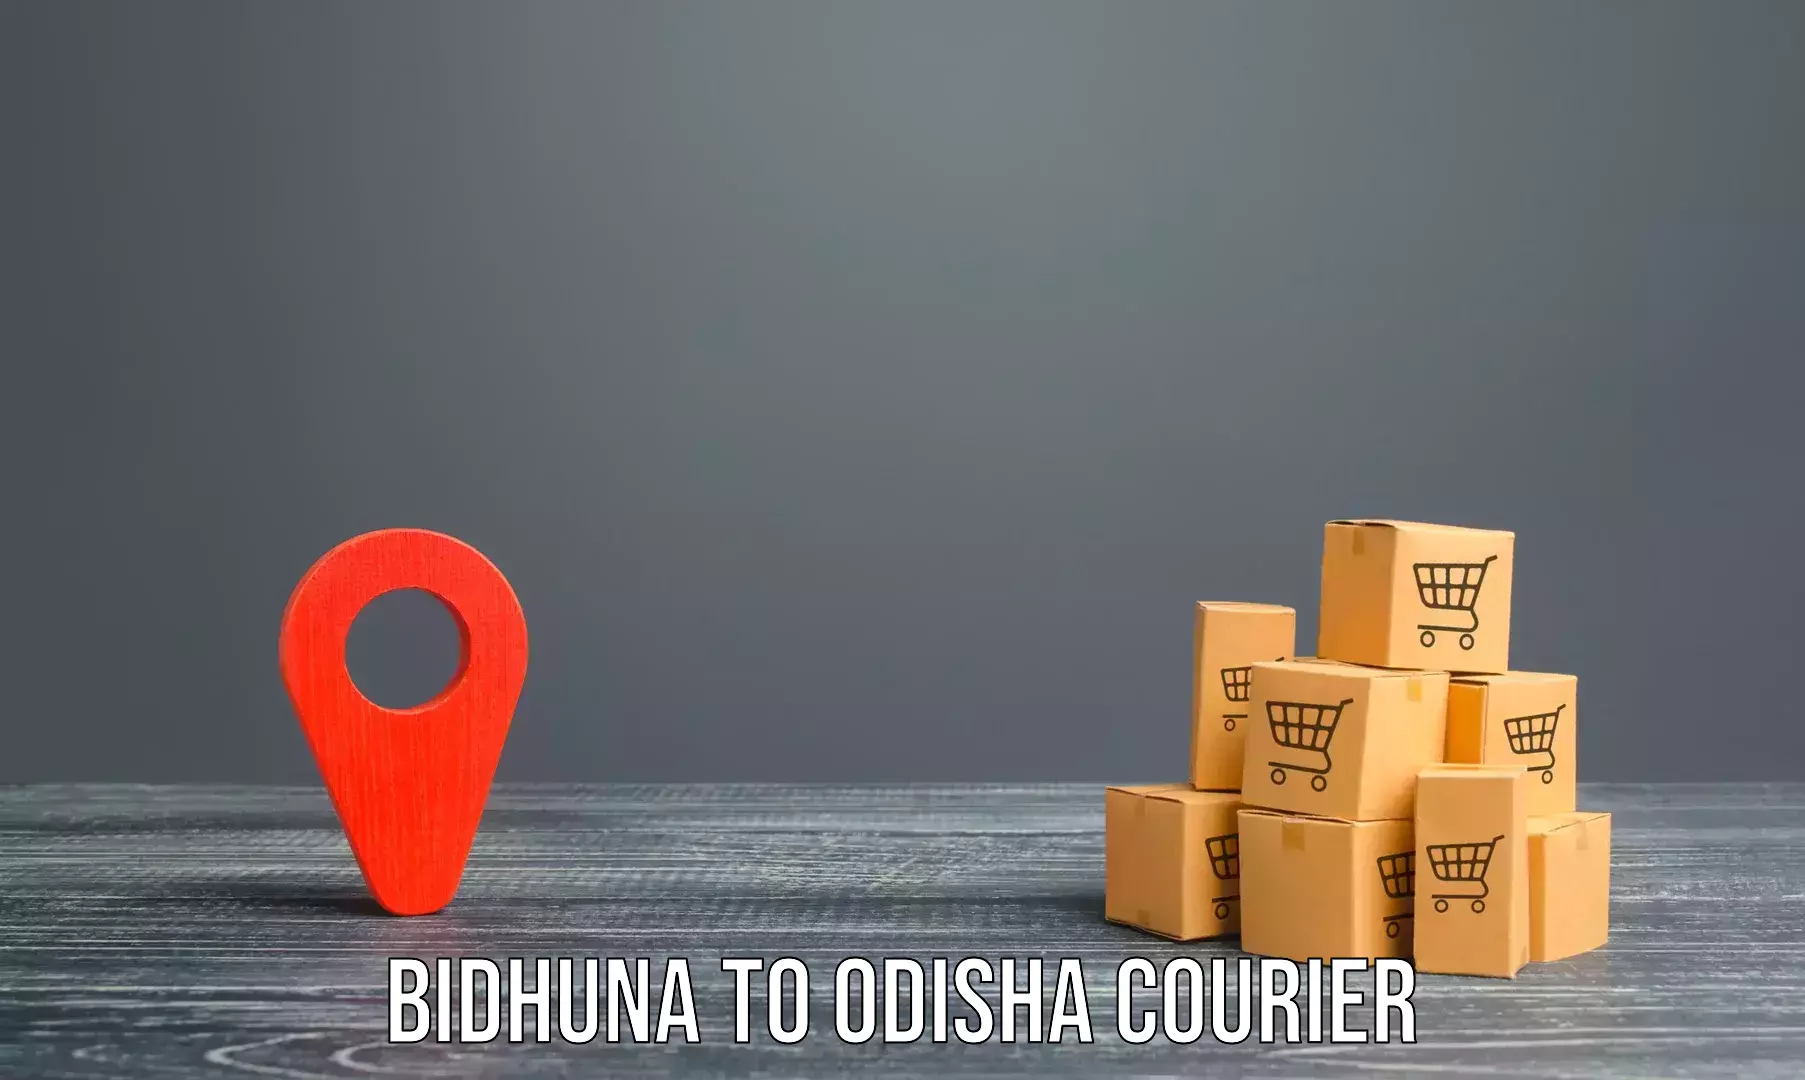 Furniture delivery service Bidhuna to Daspalla